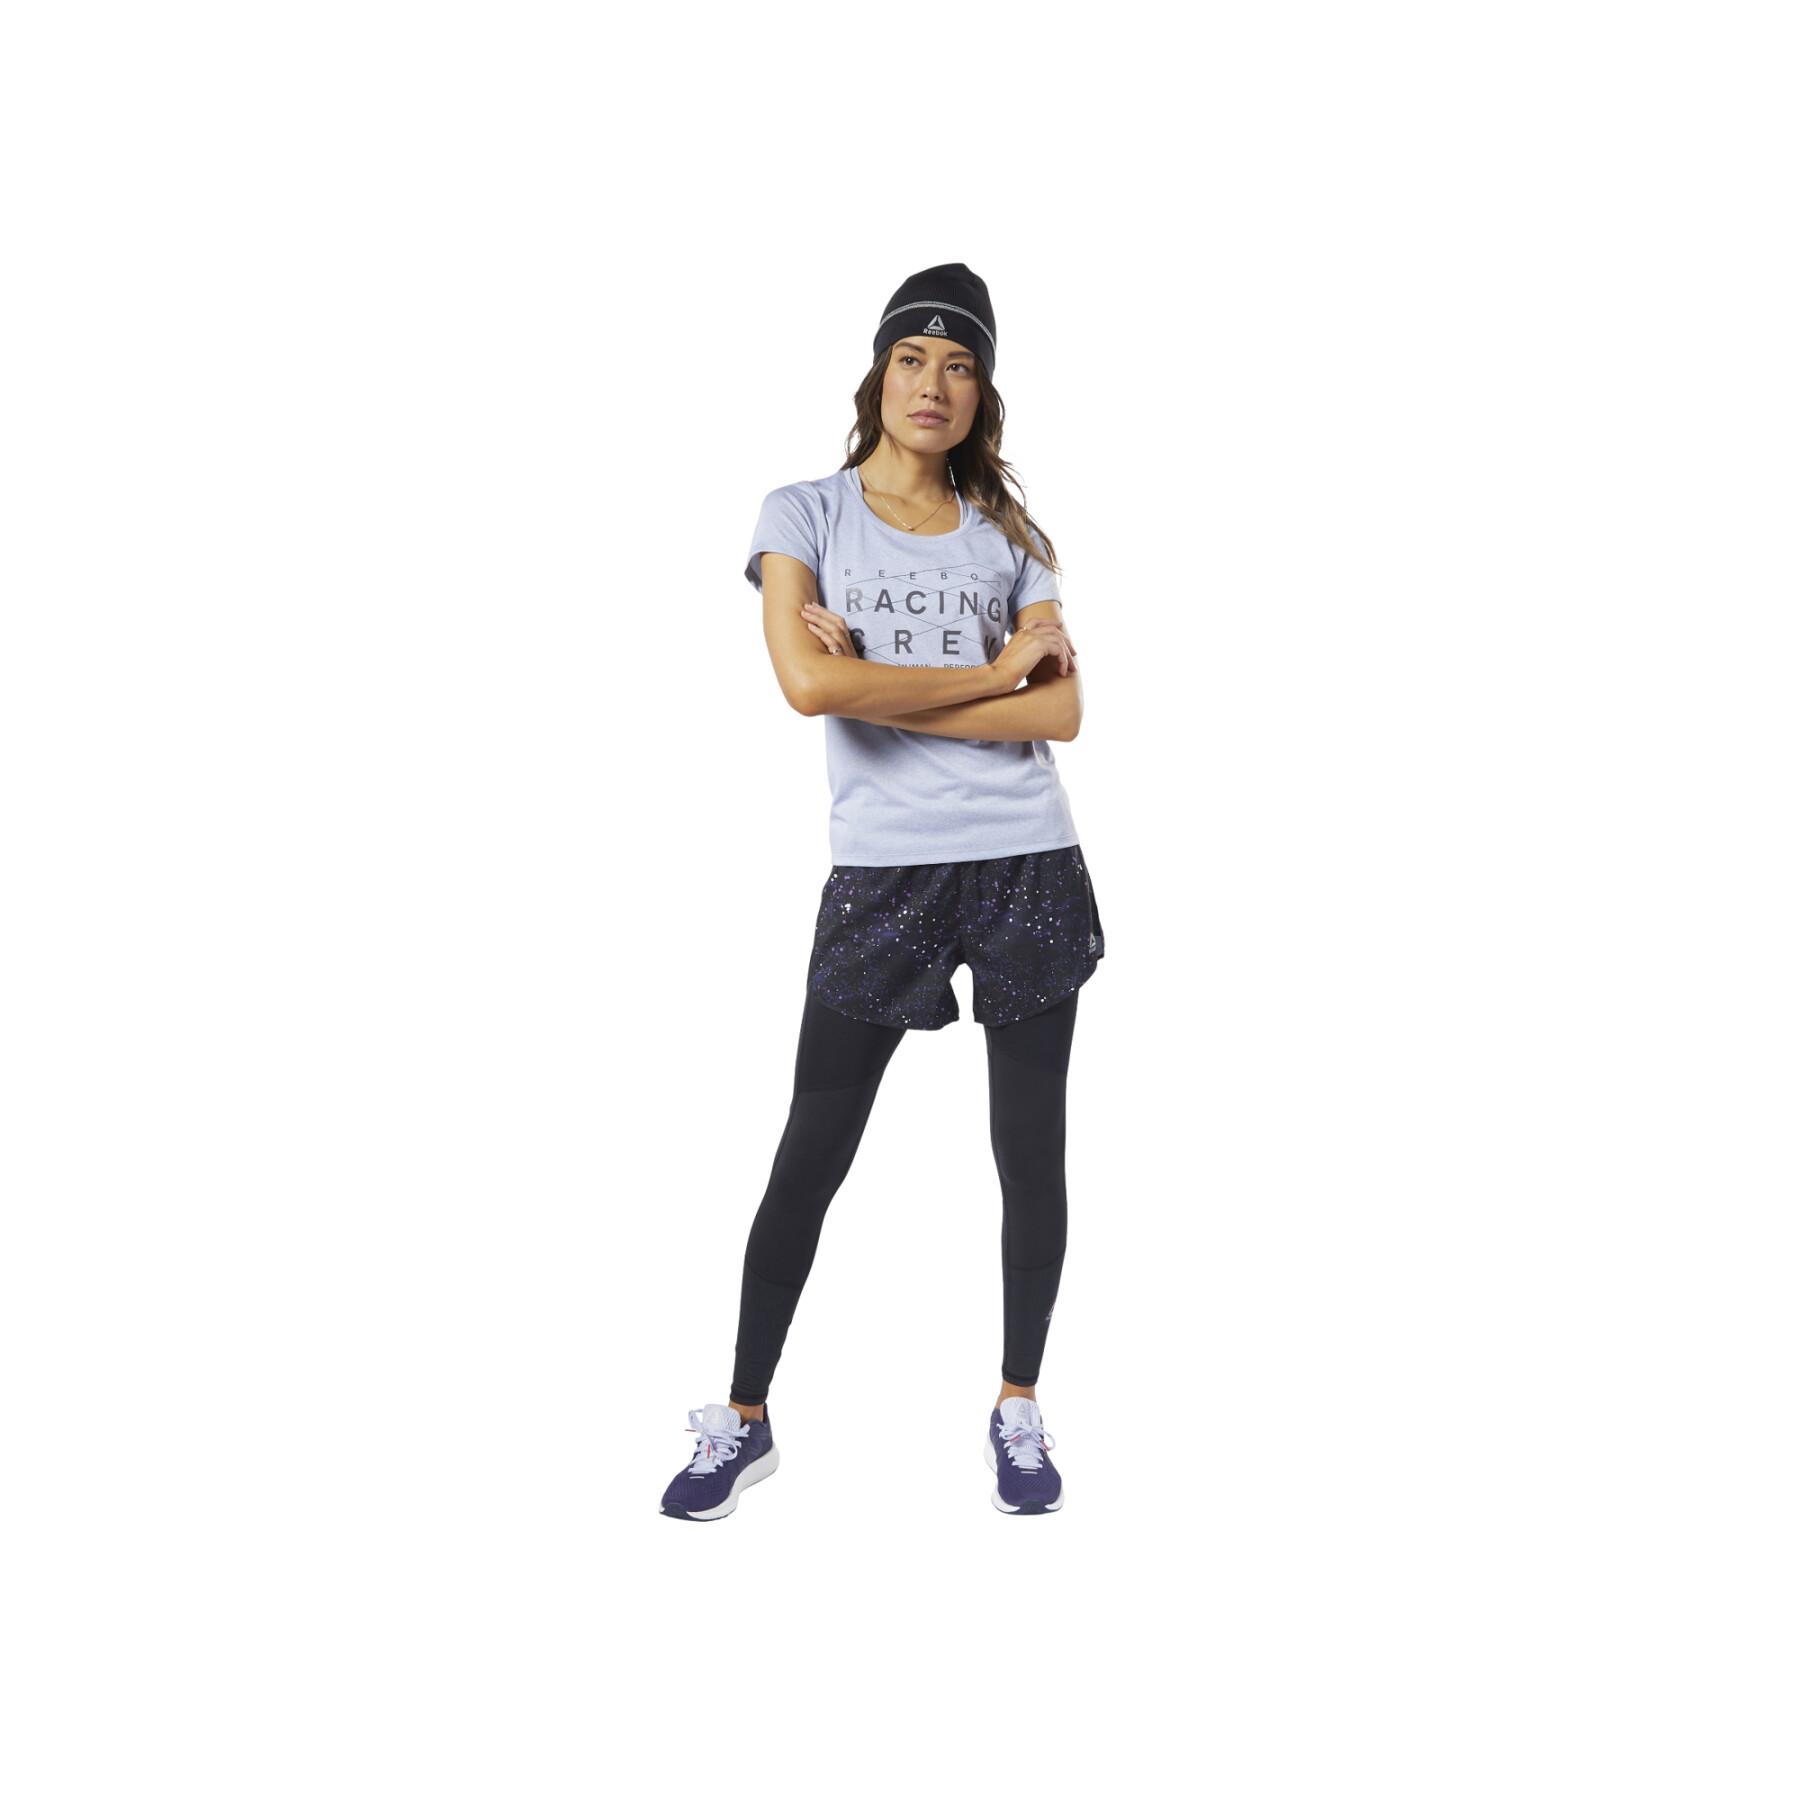 T-shirt reflectora para mulheres Reebok Running OS